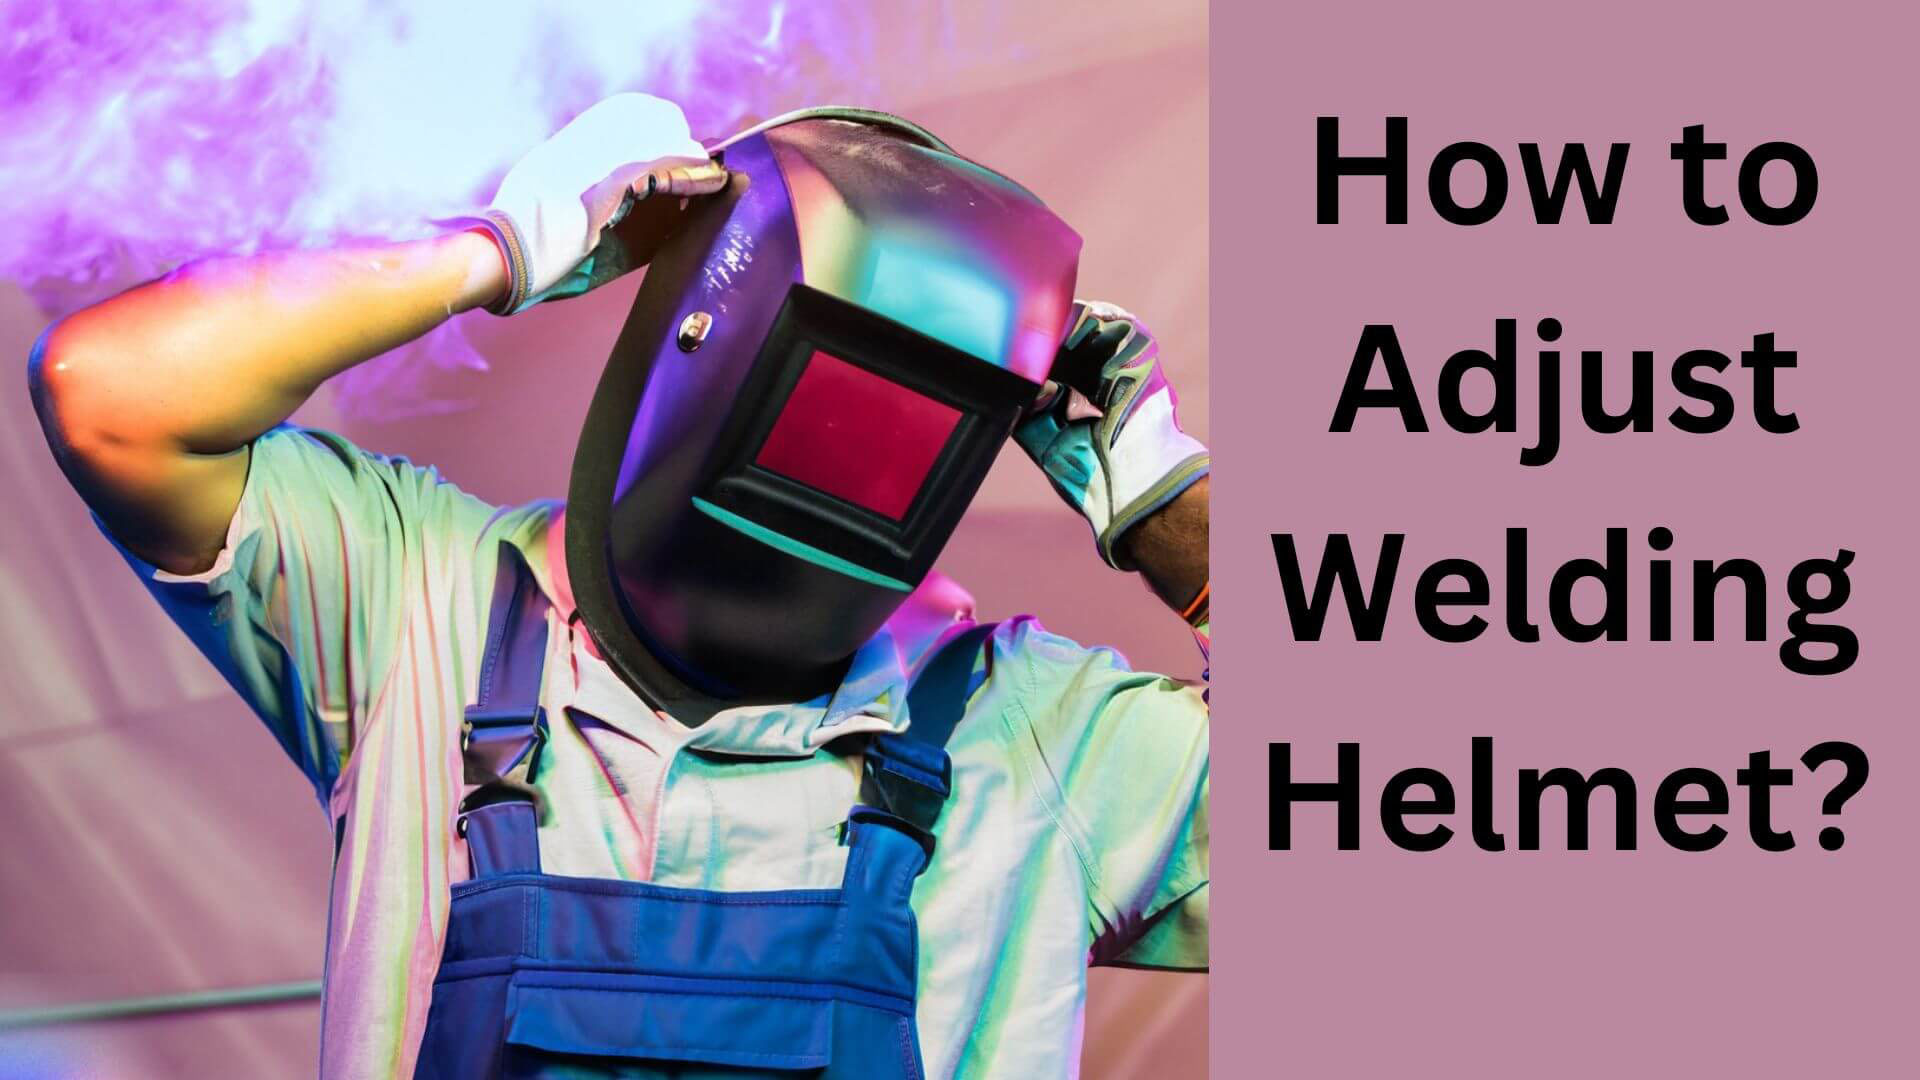 How to Adjust Welding Helmet?